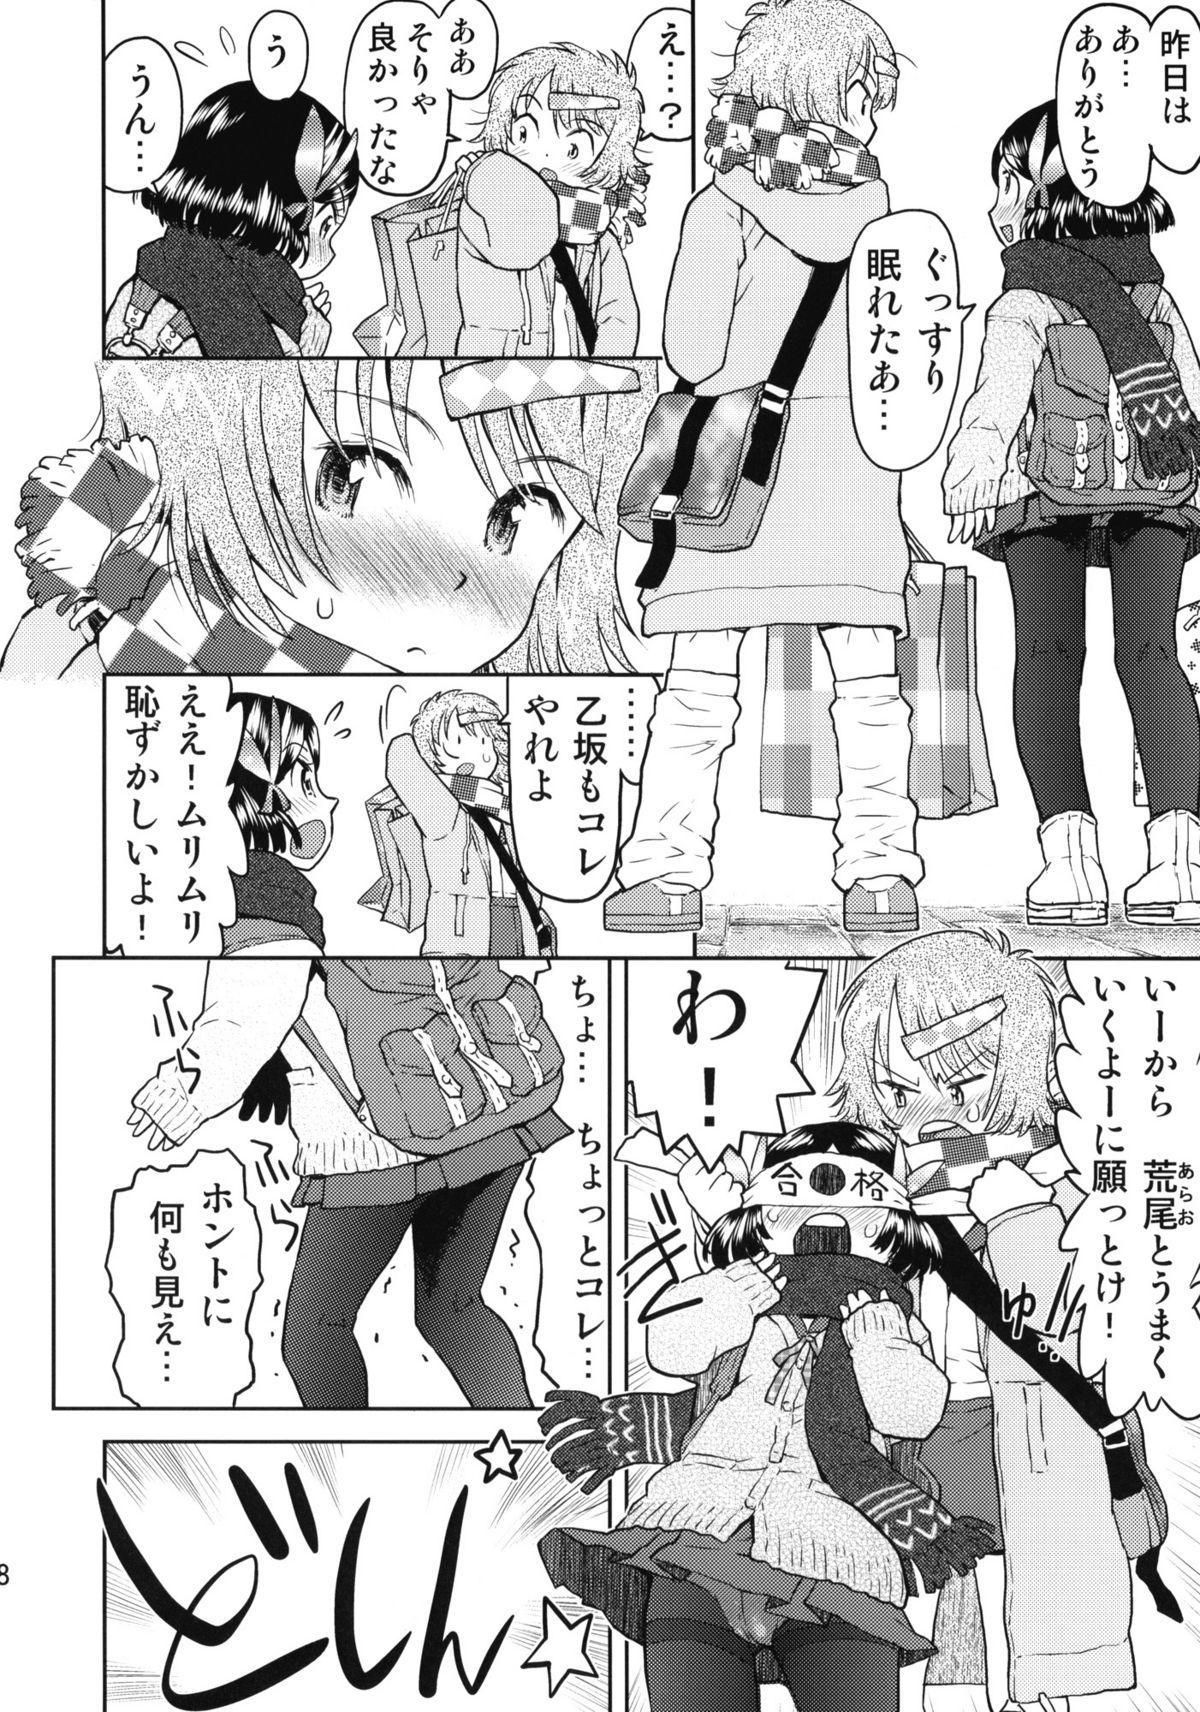 Eating Shuugaku Ryokou no Shiori Futsukame Girl Girl - Page 7